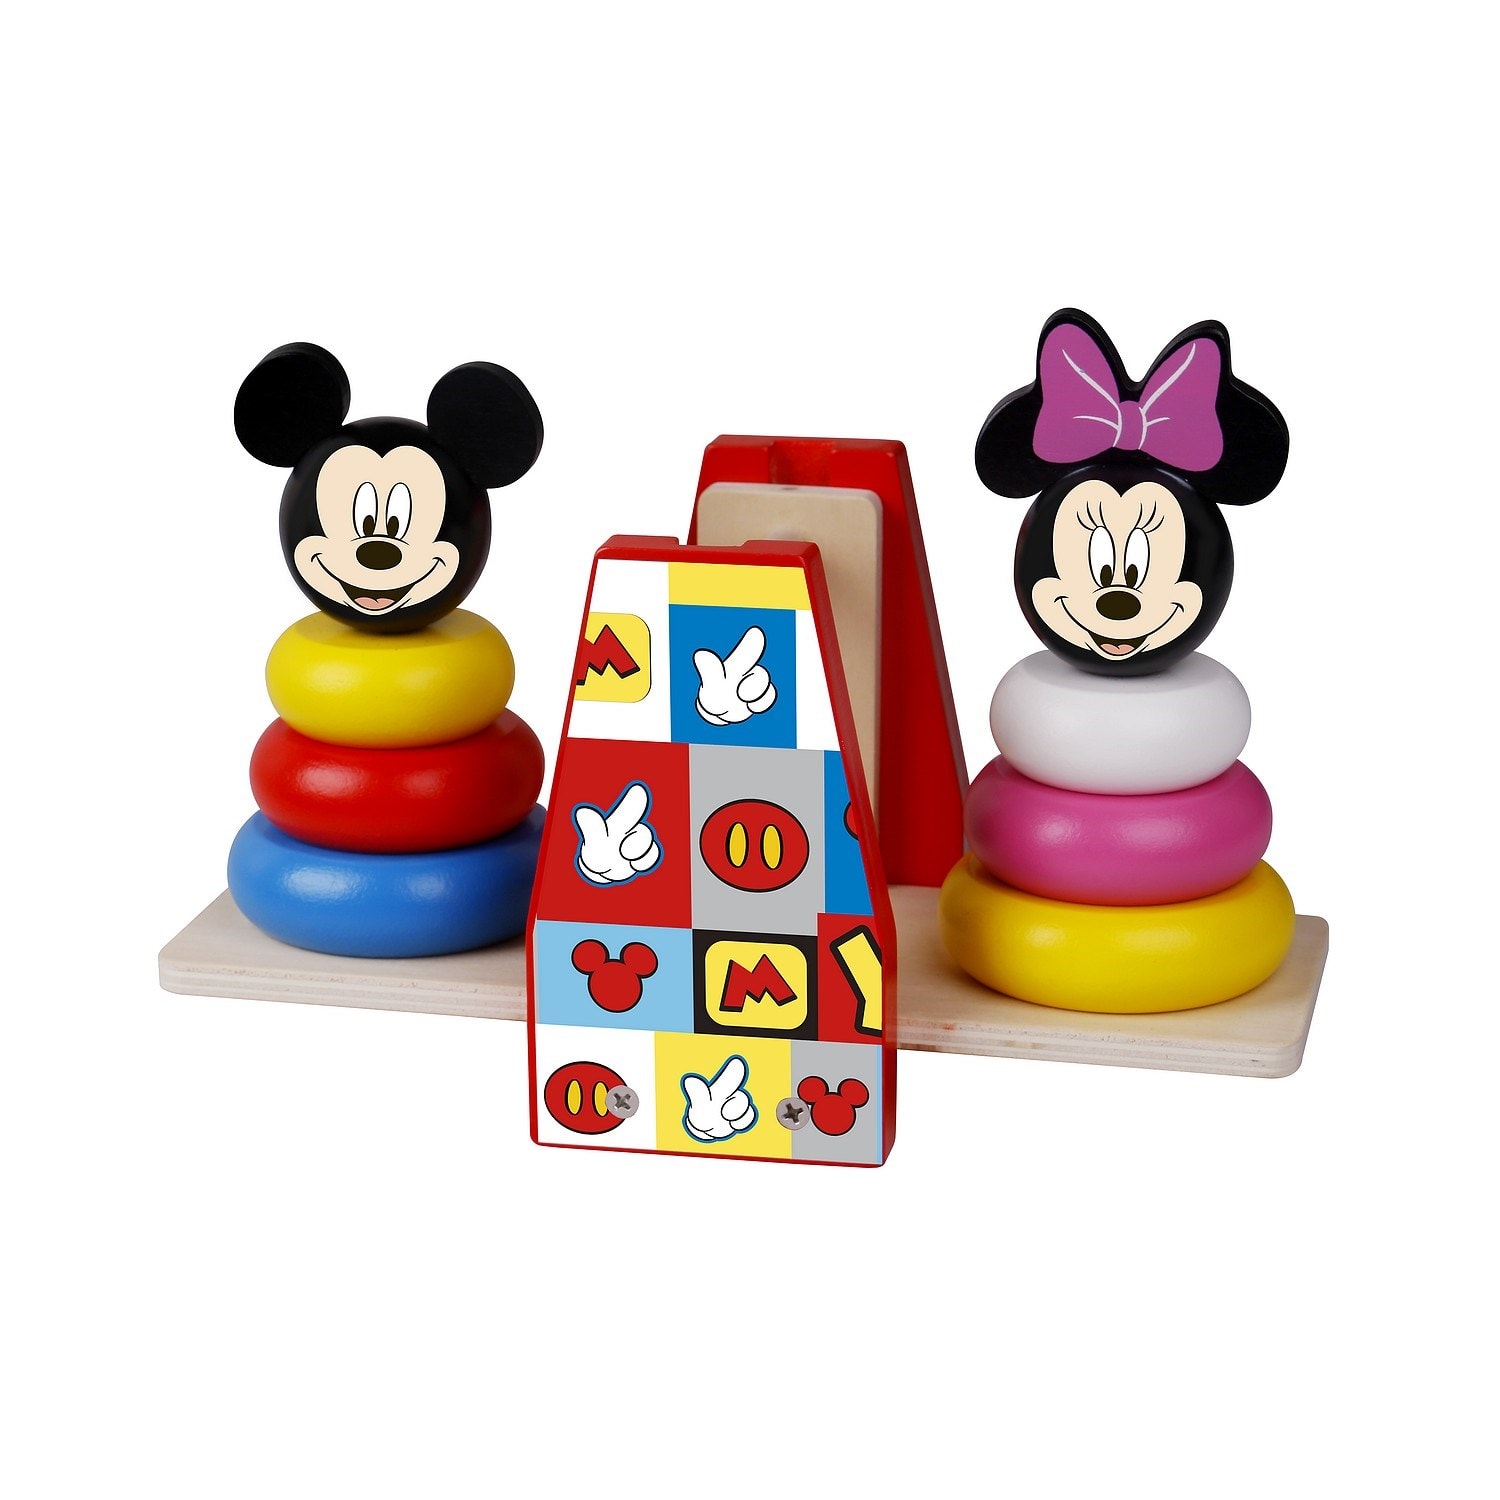 Disney mickey mouse jouet d'équilibre en bois multicolore - 23x10.5x16 cm  DISNEY Pas Cher 